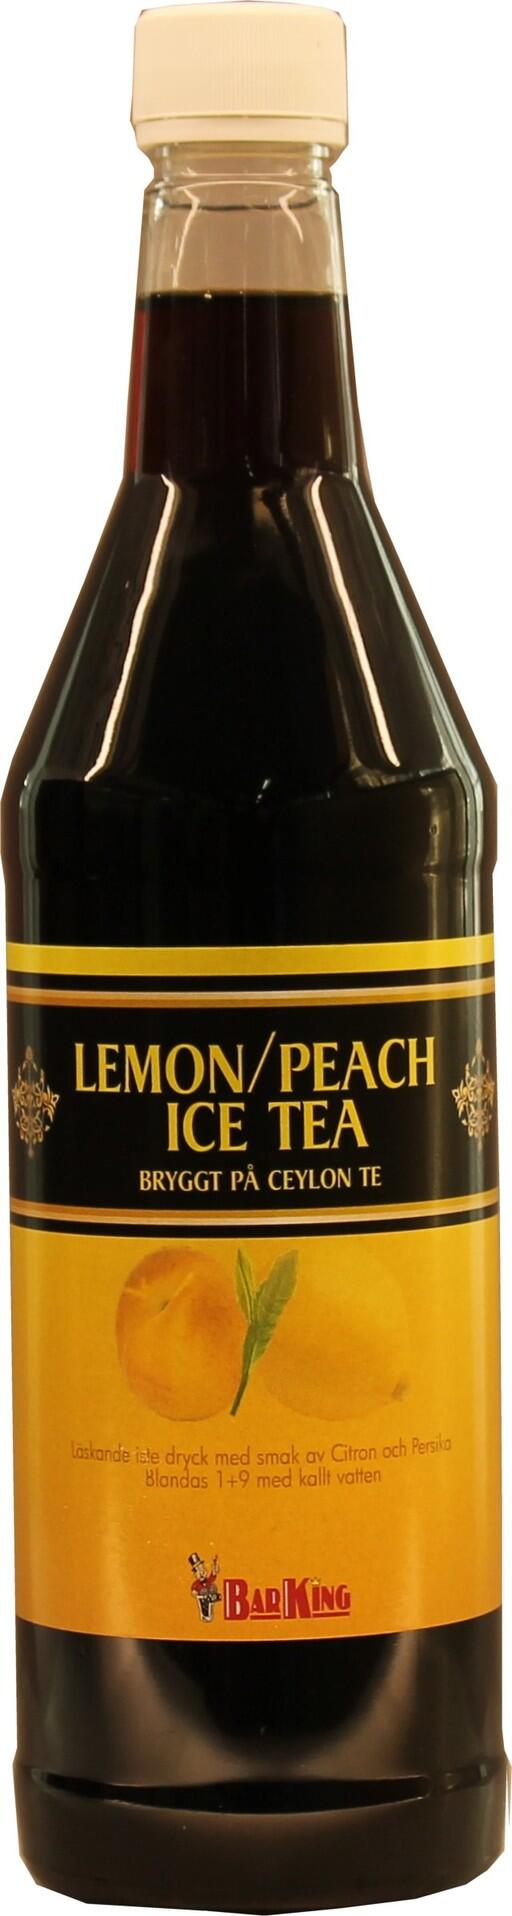 Ice Tea Lemon Peach 75 cl